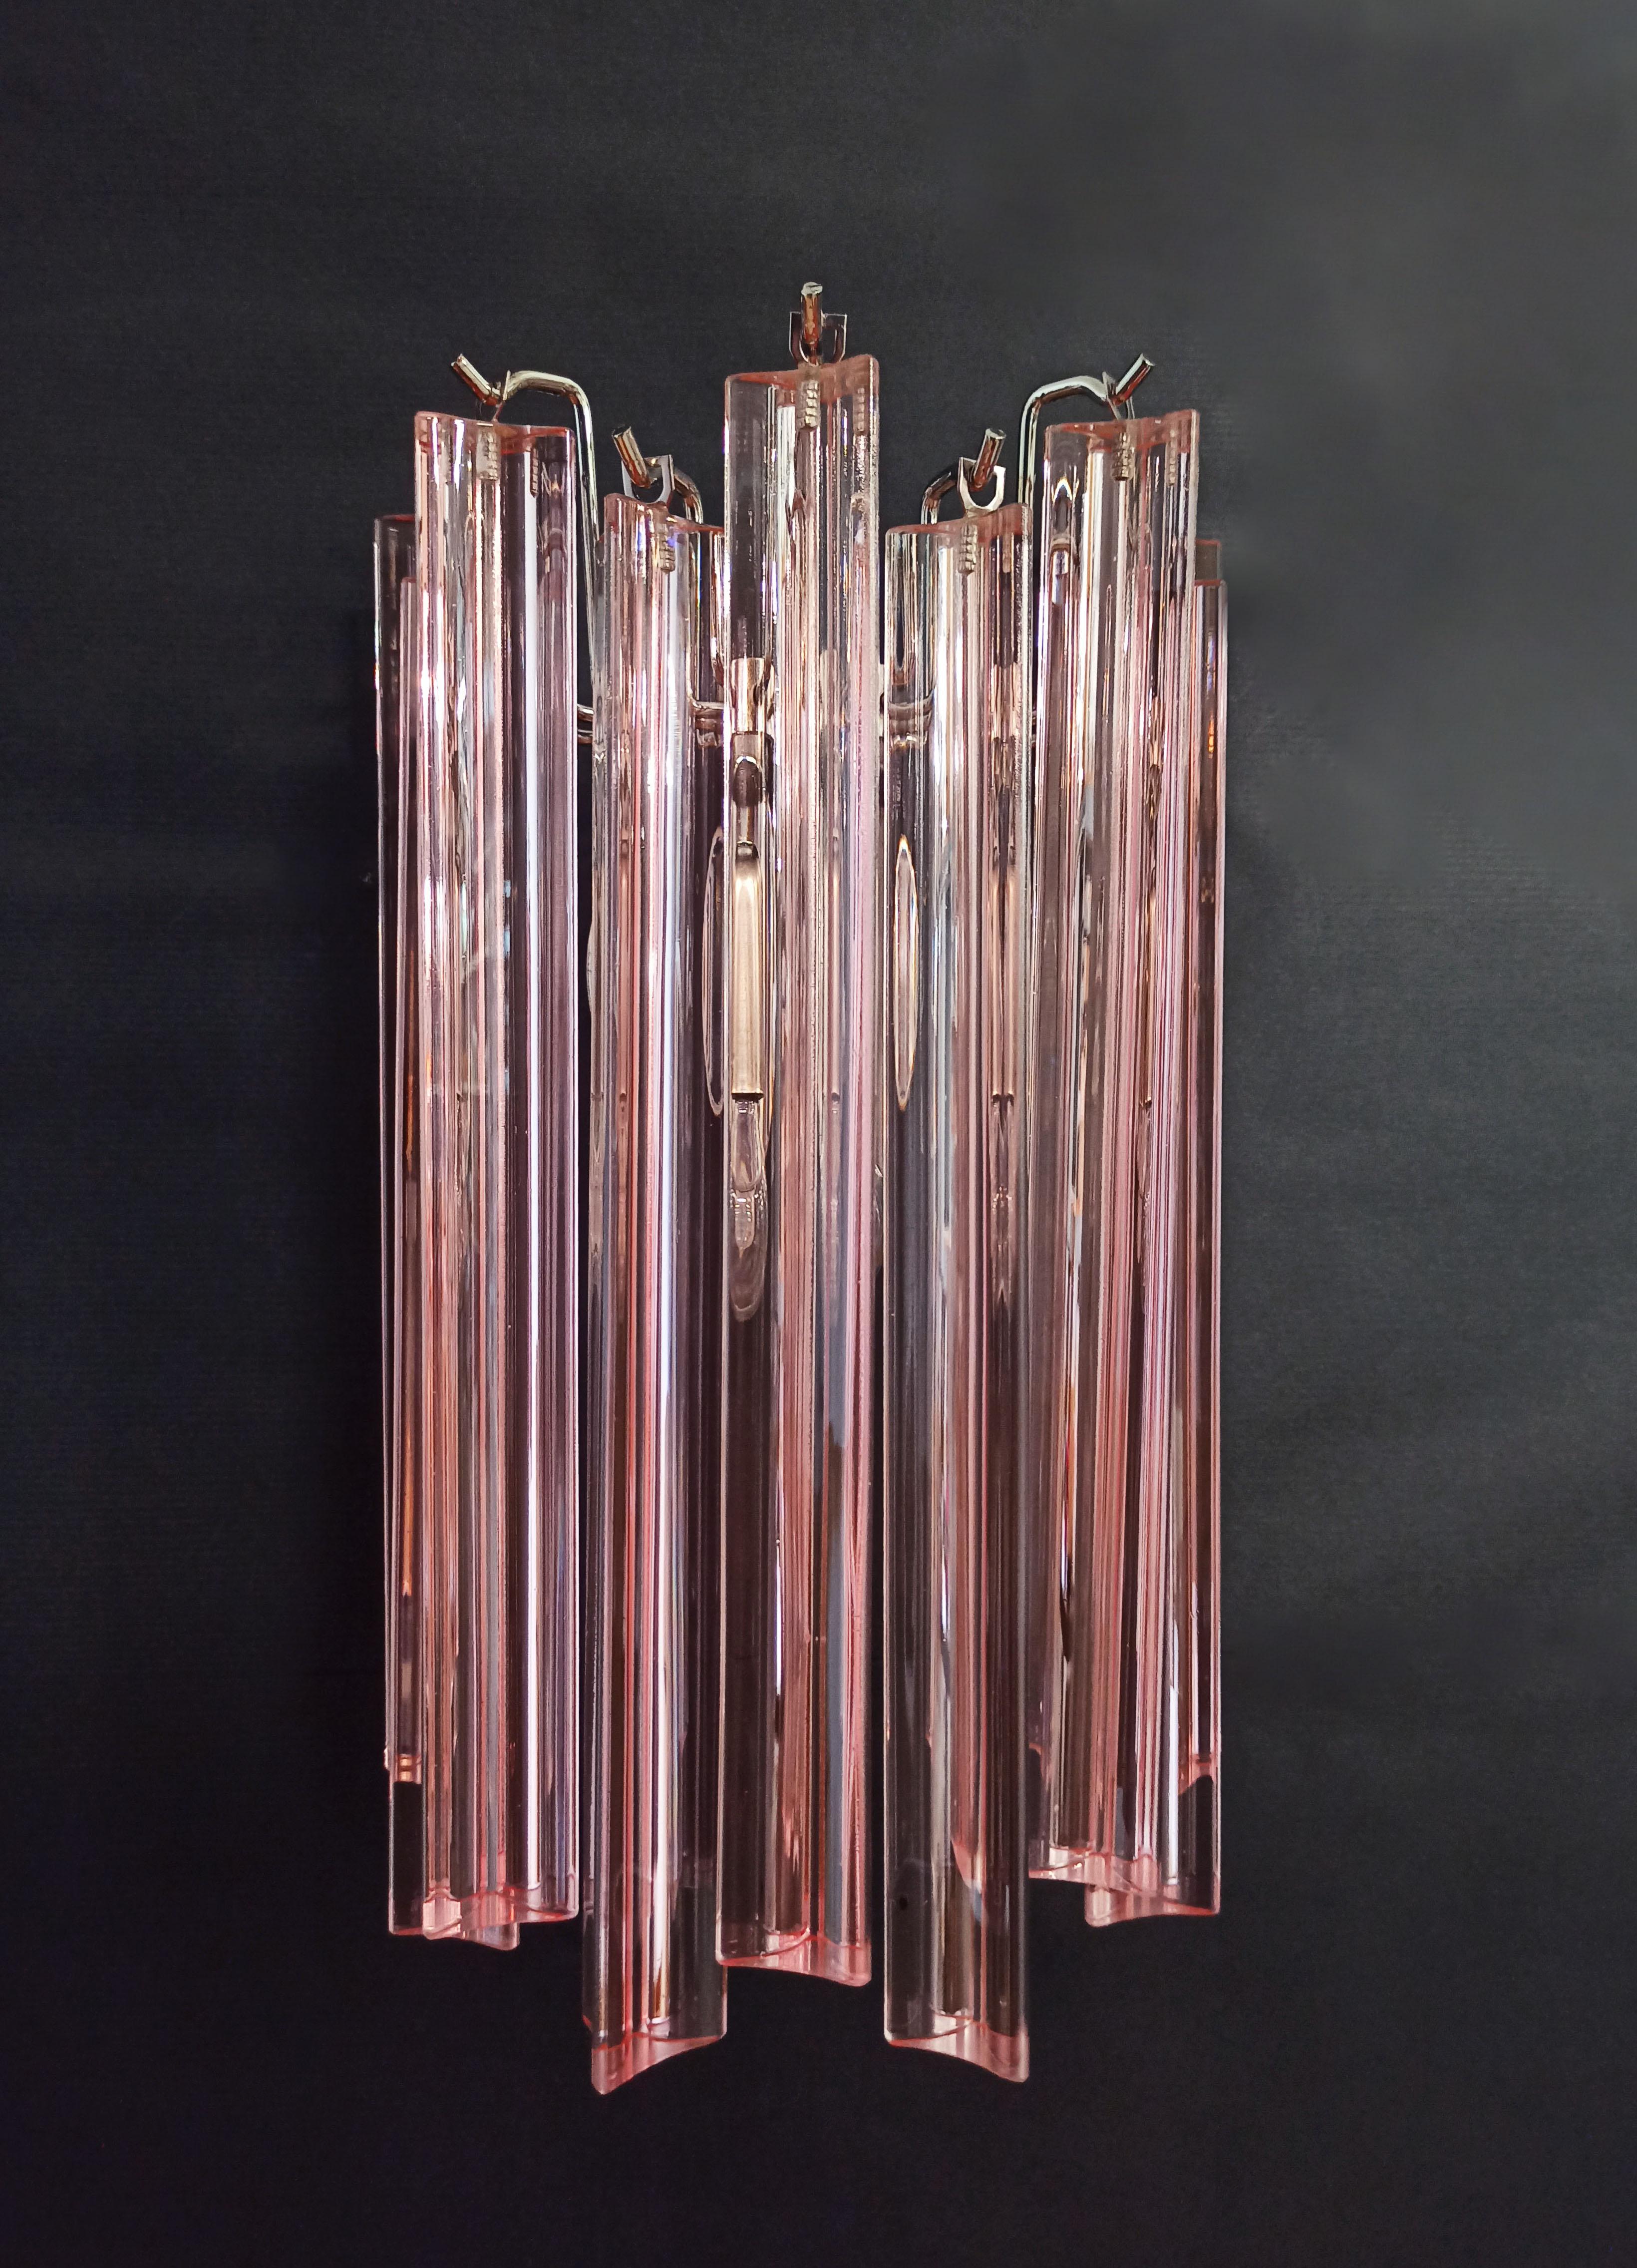 Fantastique paire d'applique murale vintage de Murano réalisée par 9 prisme de cristal rose de Murano (tryri) pour chaque applique.  dans un cadre métallique chromé.
Période : fin du XXe siècle
Dimensions : 12,40 pouces de hauteur (32 cm) ; 7,8